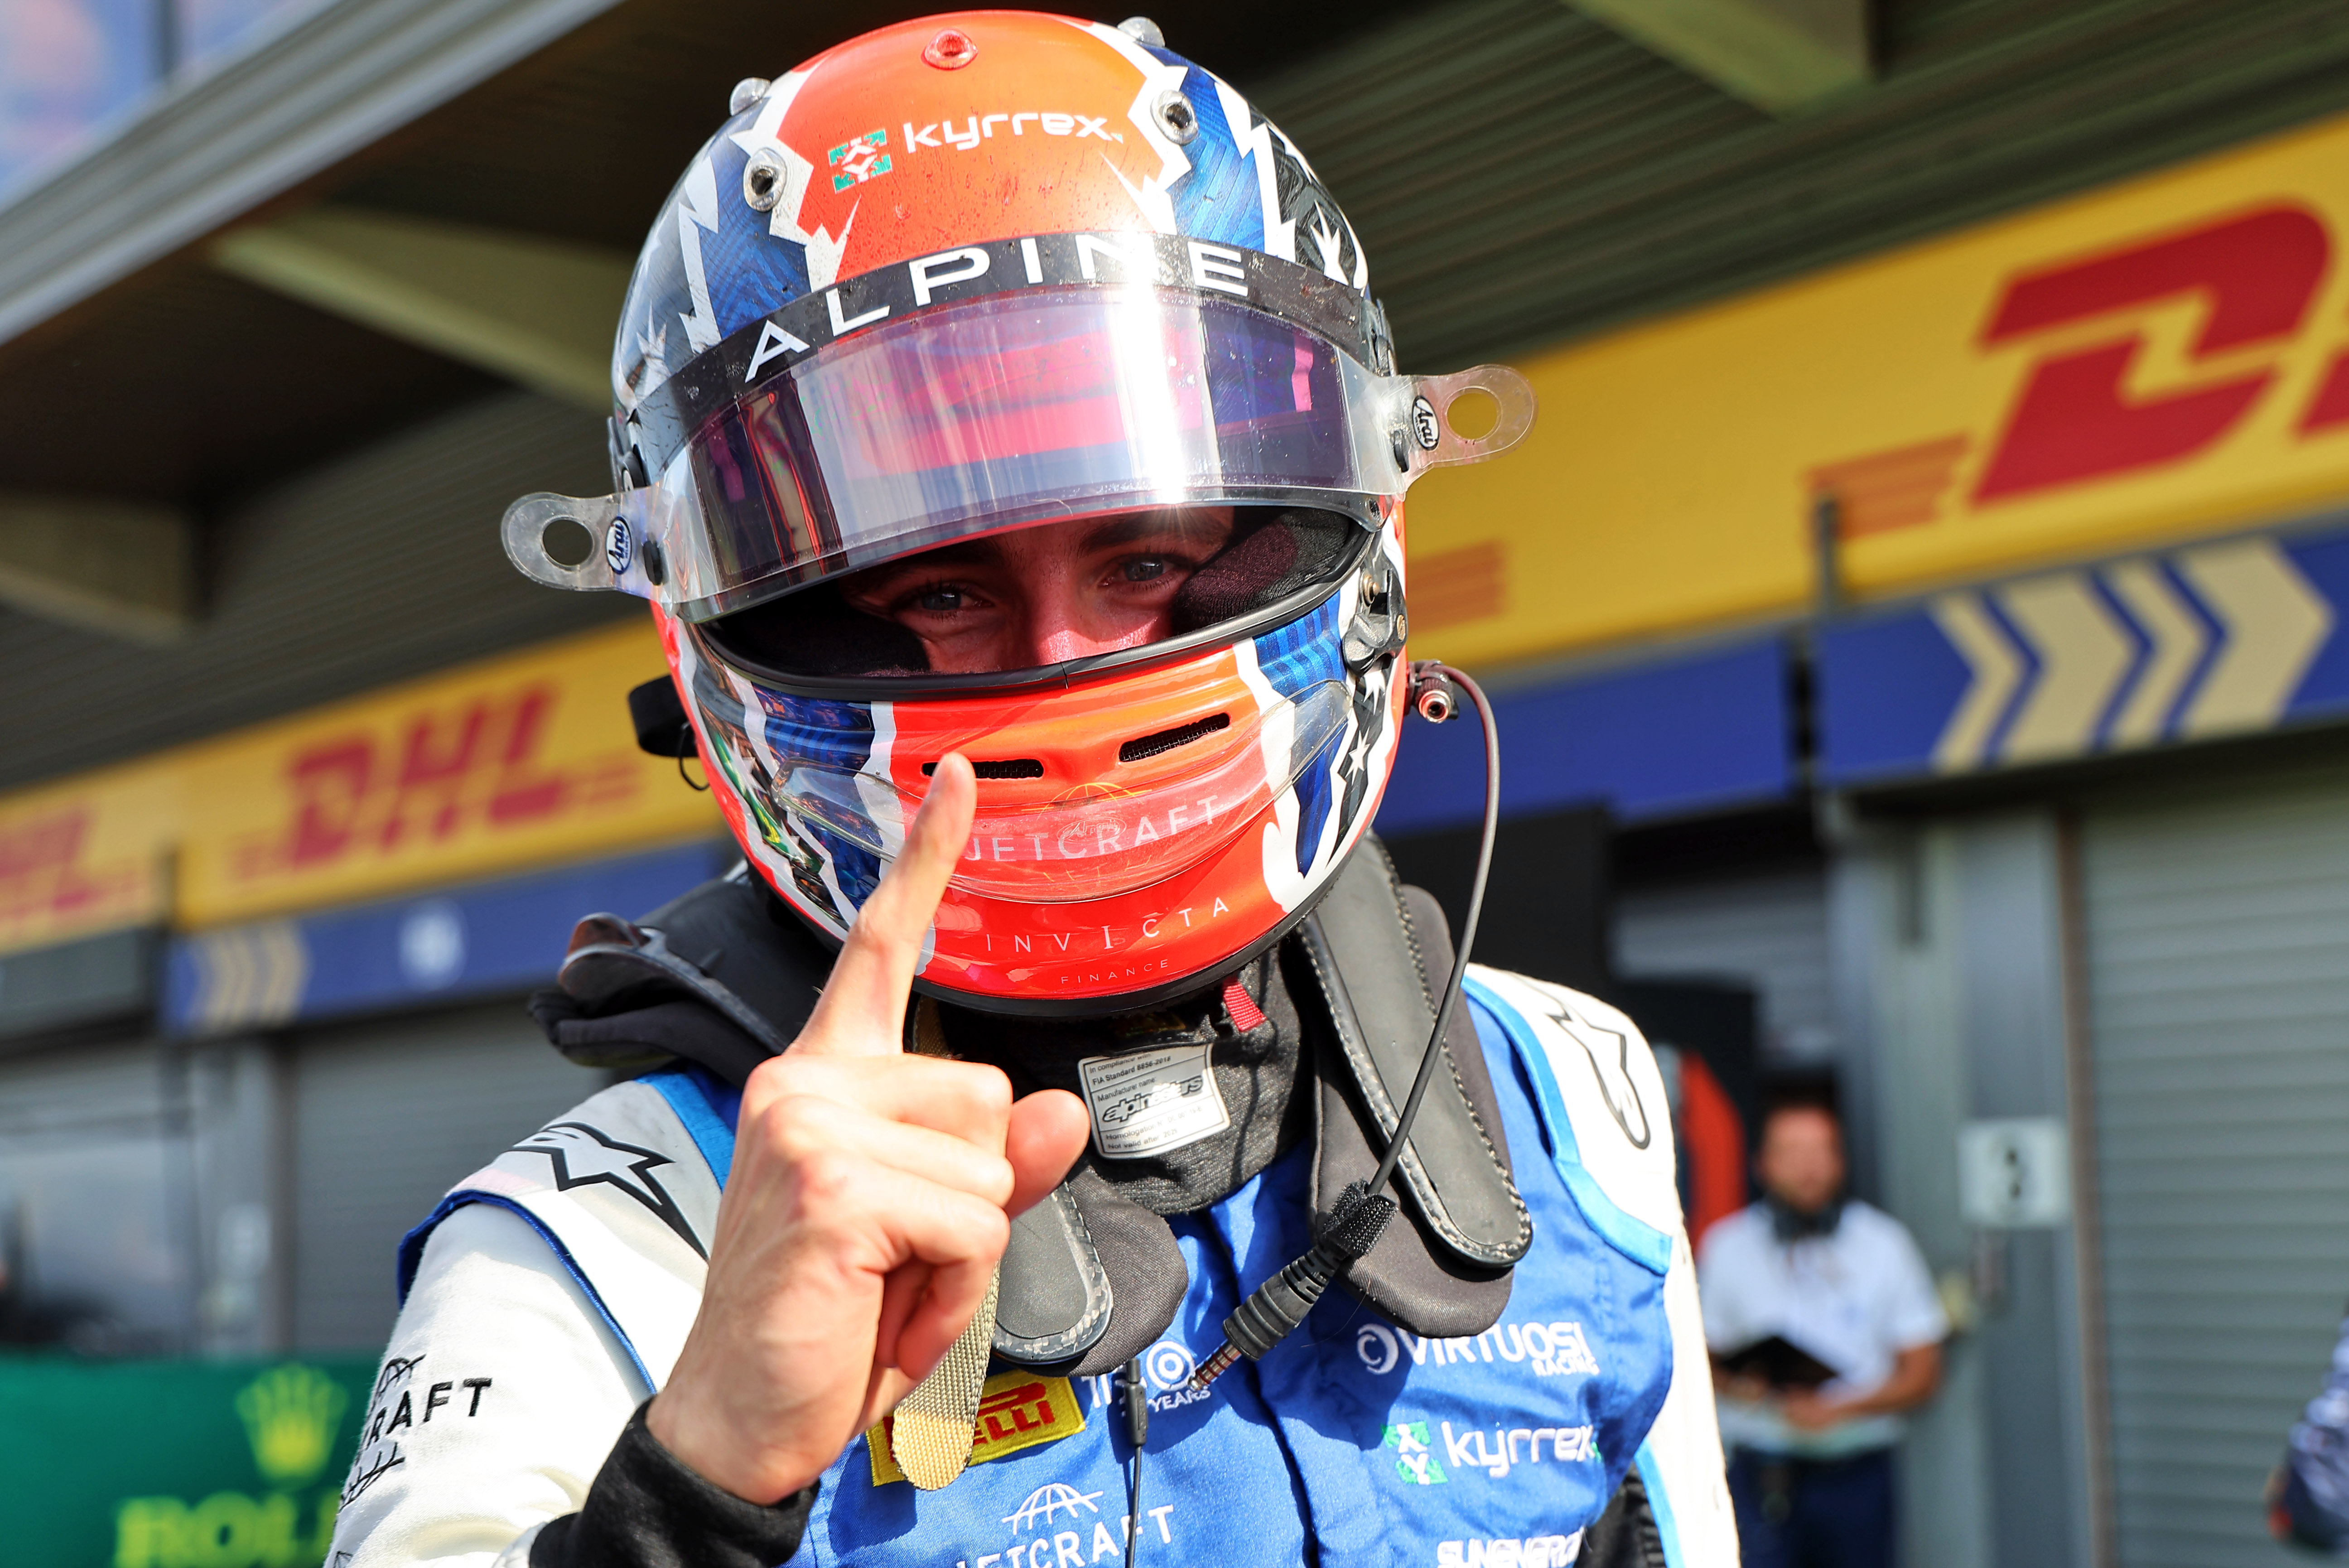 Campionat de Fórmula 2 Fia de curses d'automòbils diumenge Spa Francorchamps, Bèlgica